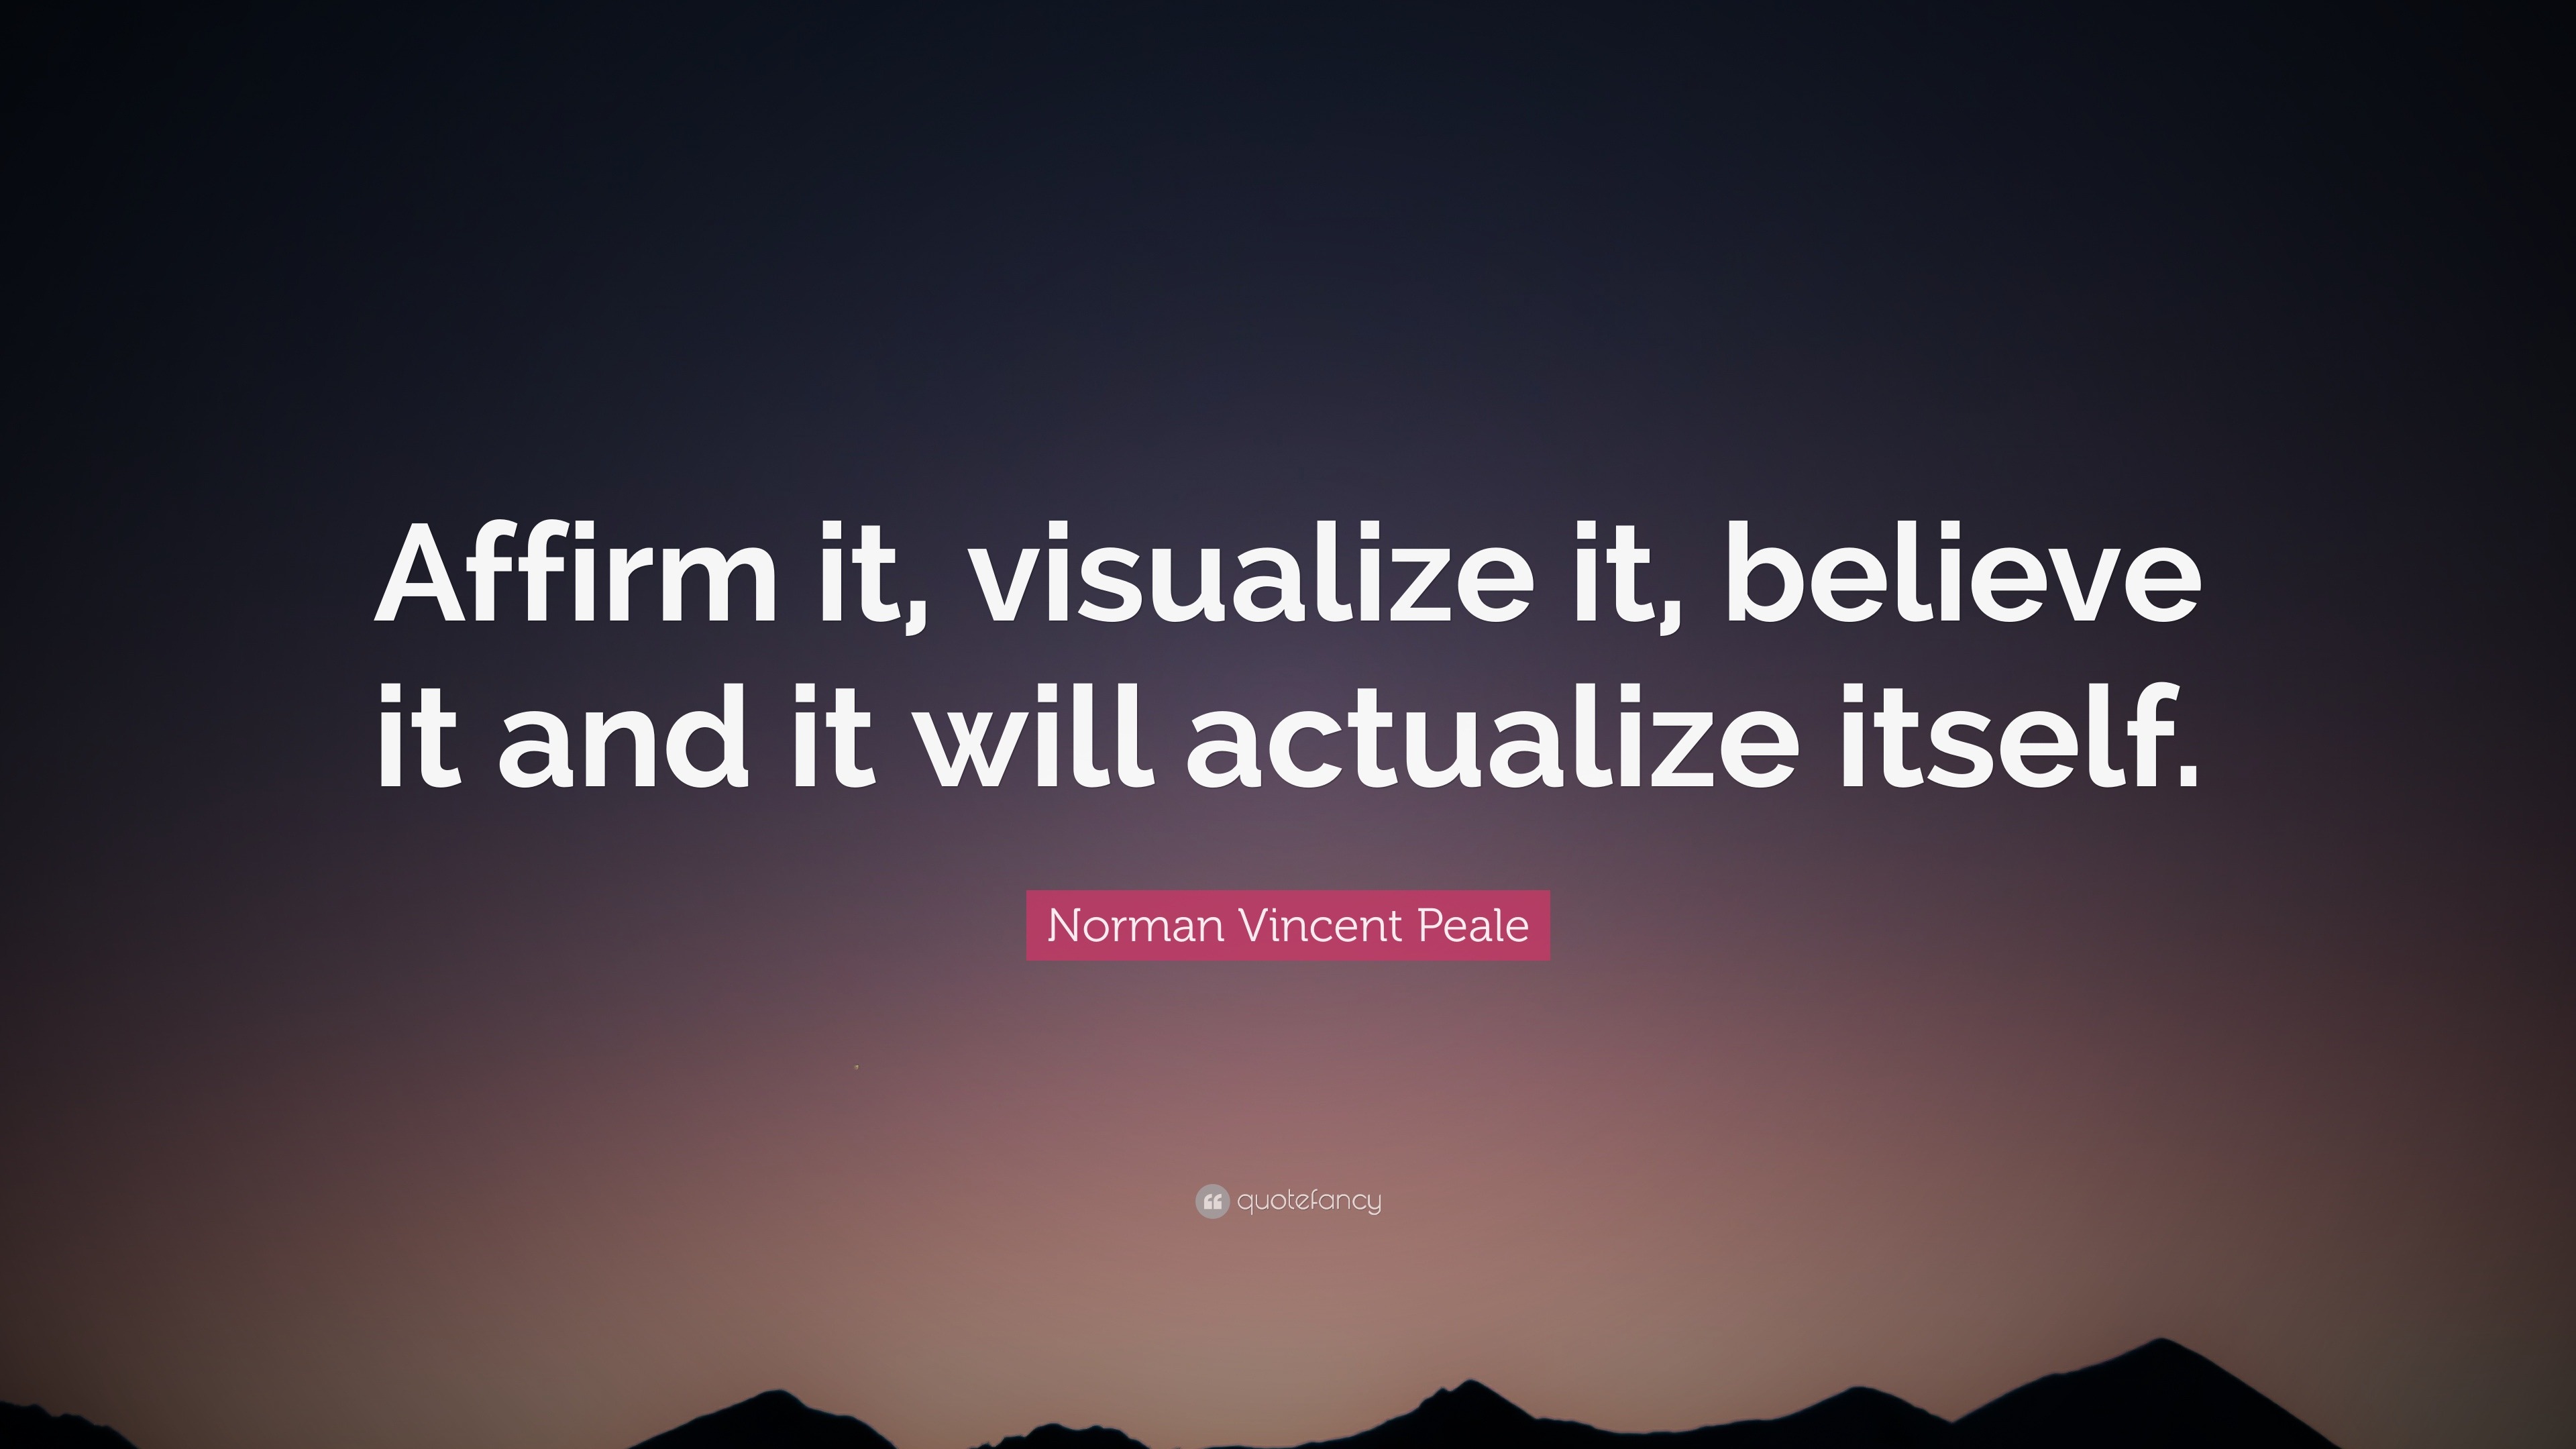 Norman Vincent Peale Quote: “Affirm it, visualize it, believe it ...